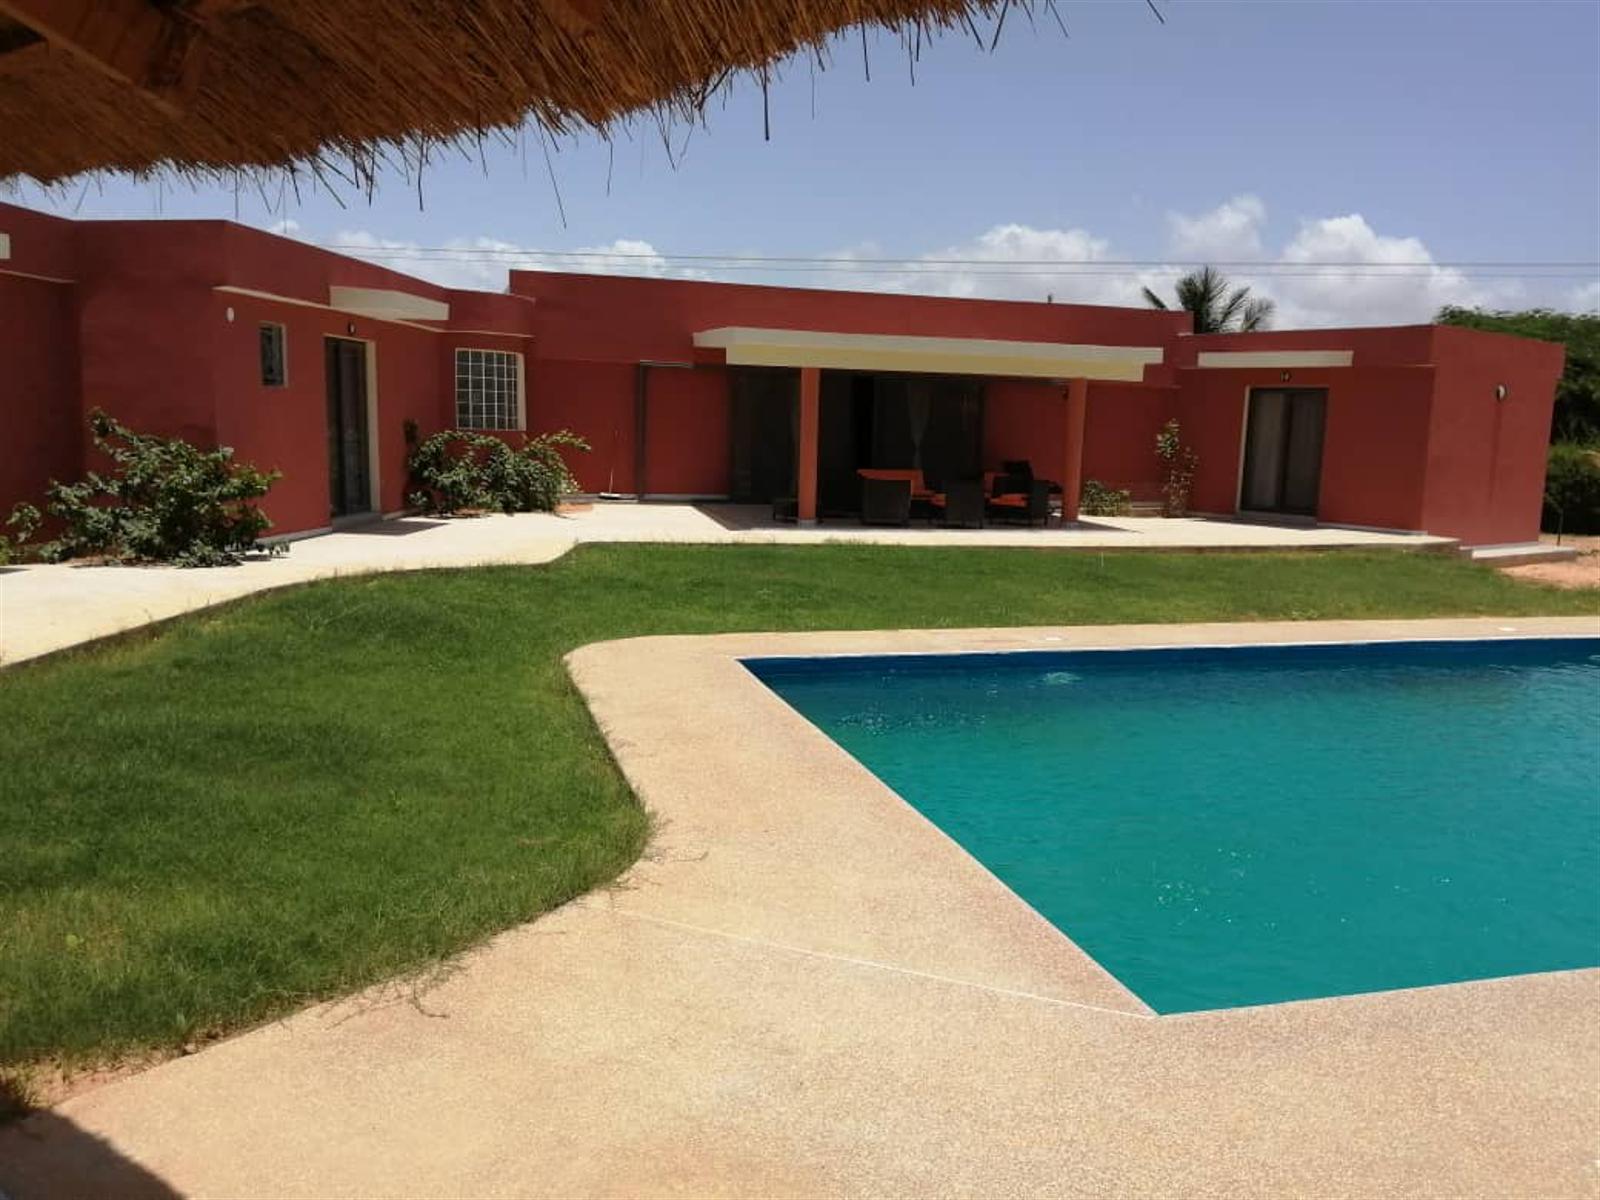 Belle villa avec piscine de plain pied offrant de beaux espaces Residence securise